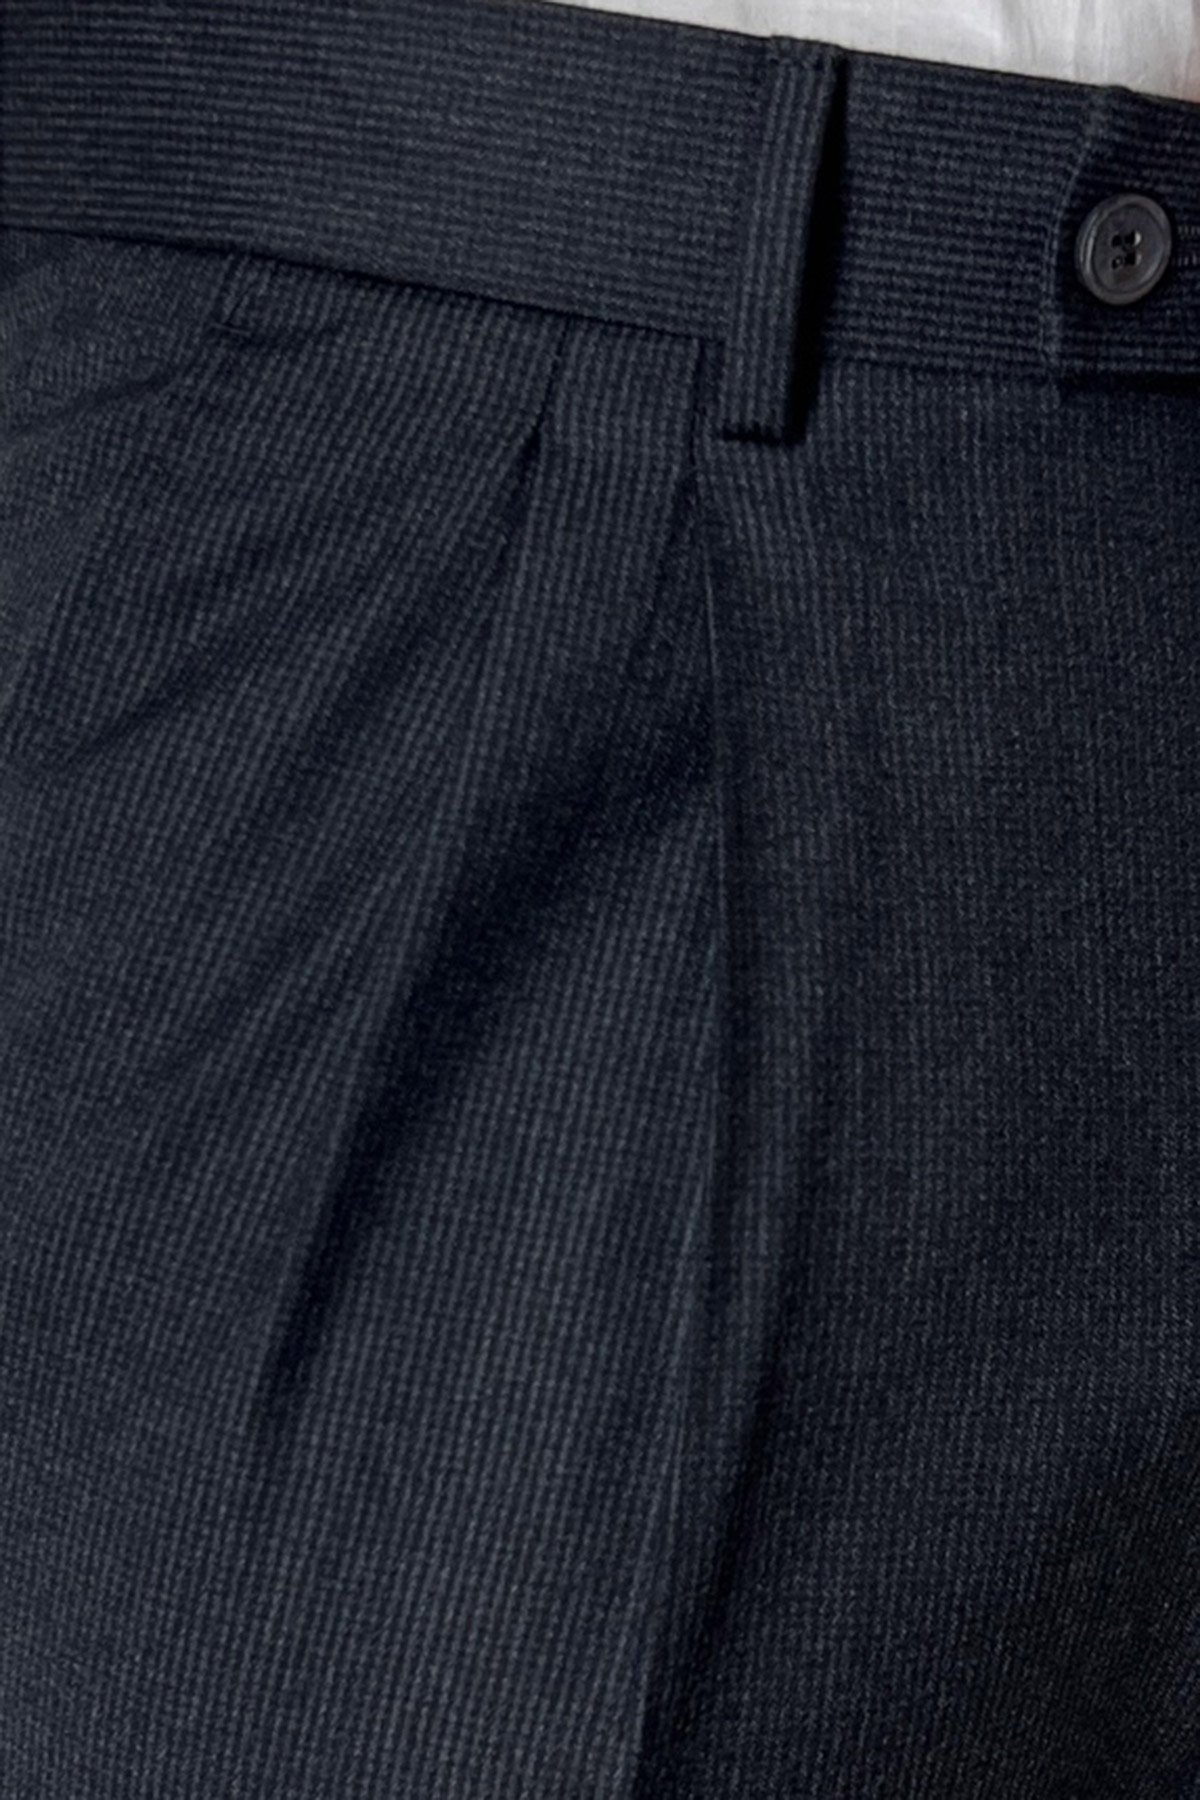 Pantalone uomo grigio fantasia pied de poule vita alta tasca america in lana flanella con doppia pinces